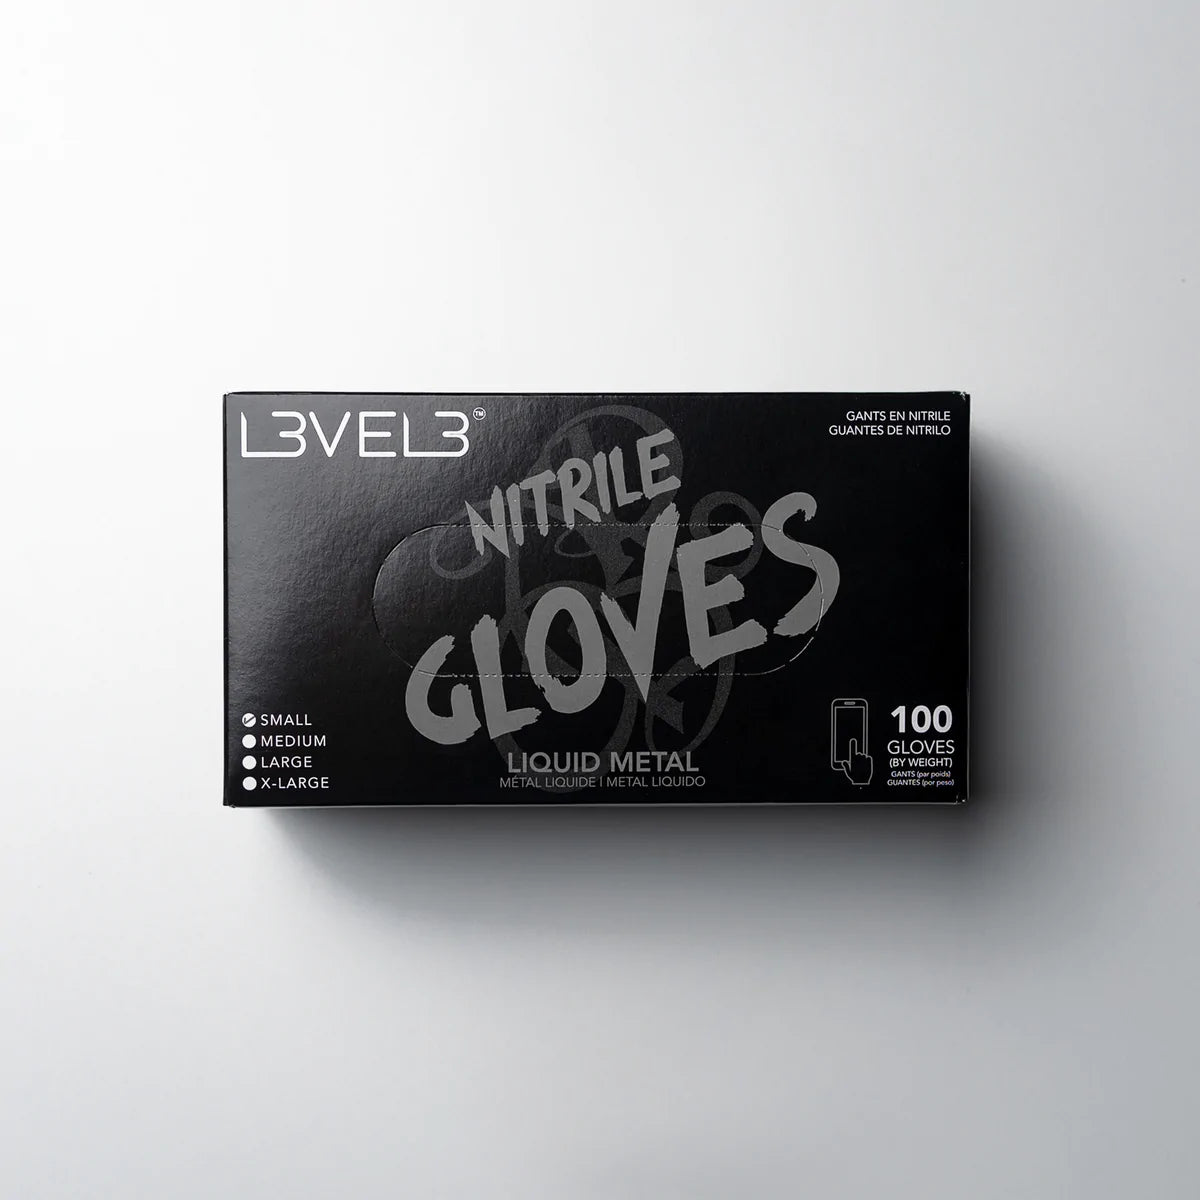 LV3 Nitrile Gloves Silver